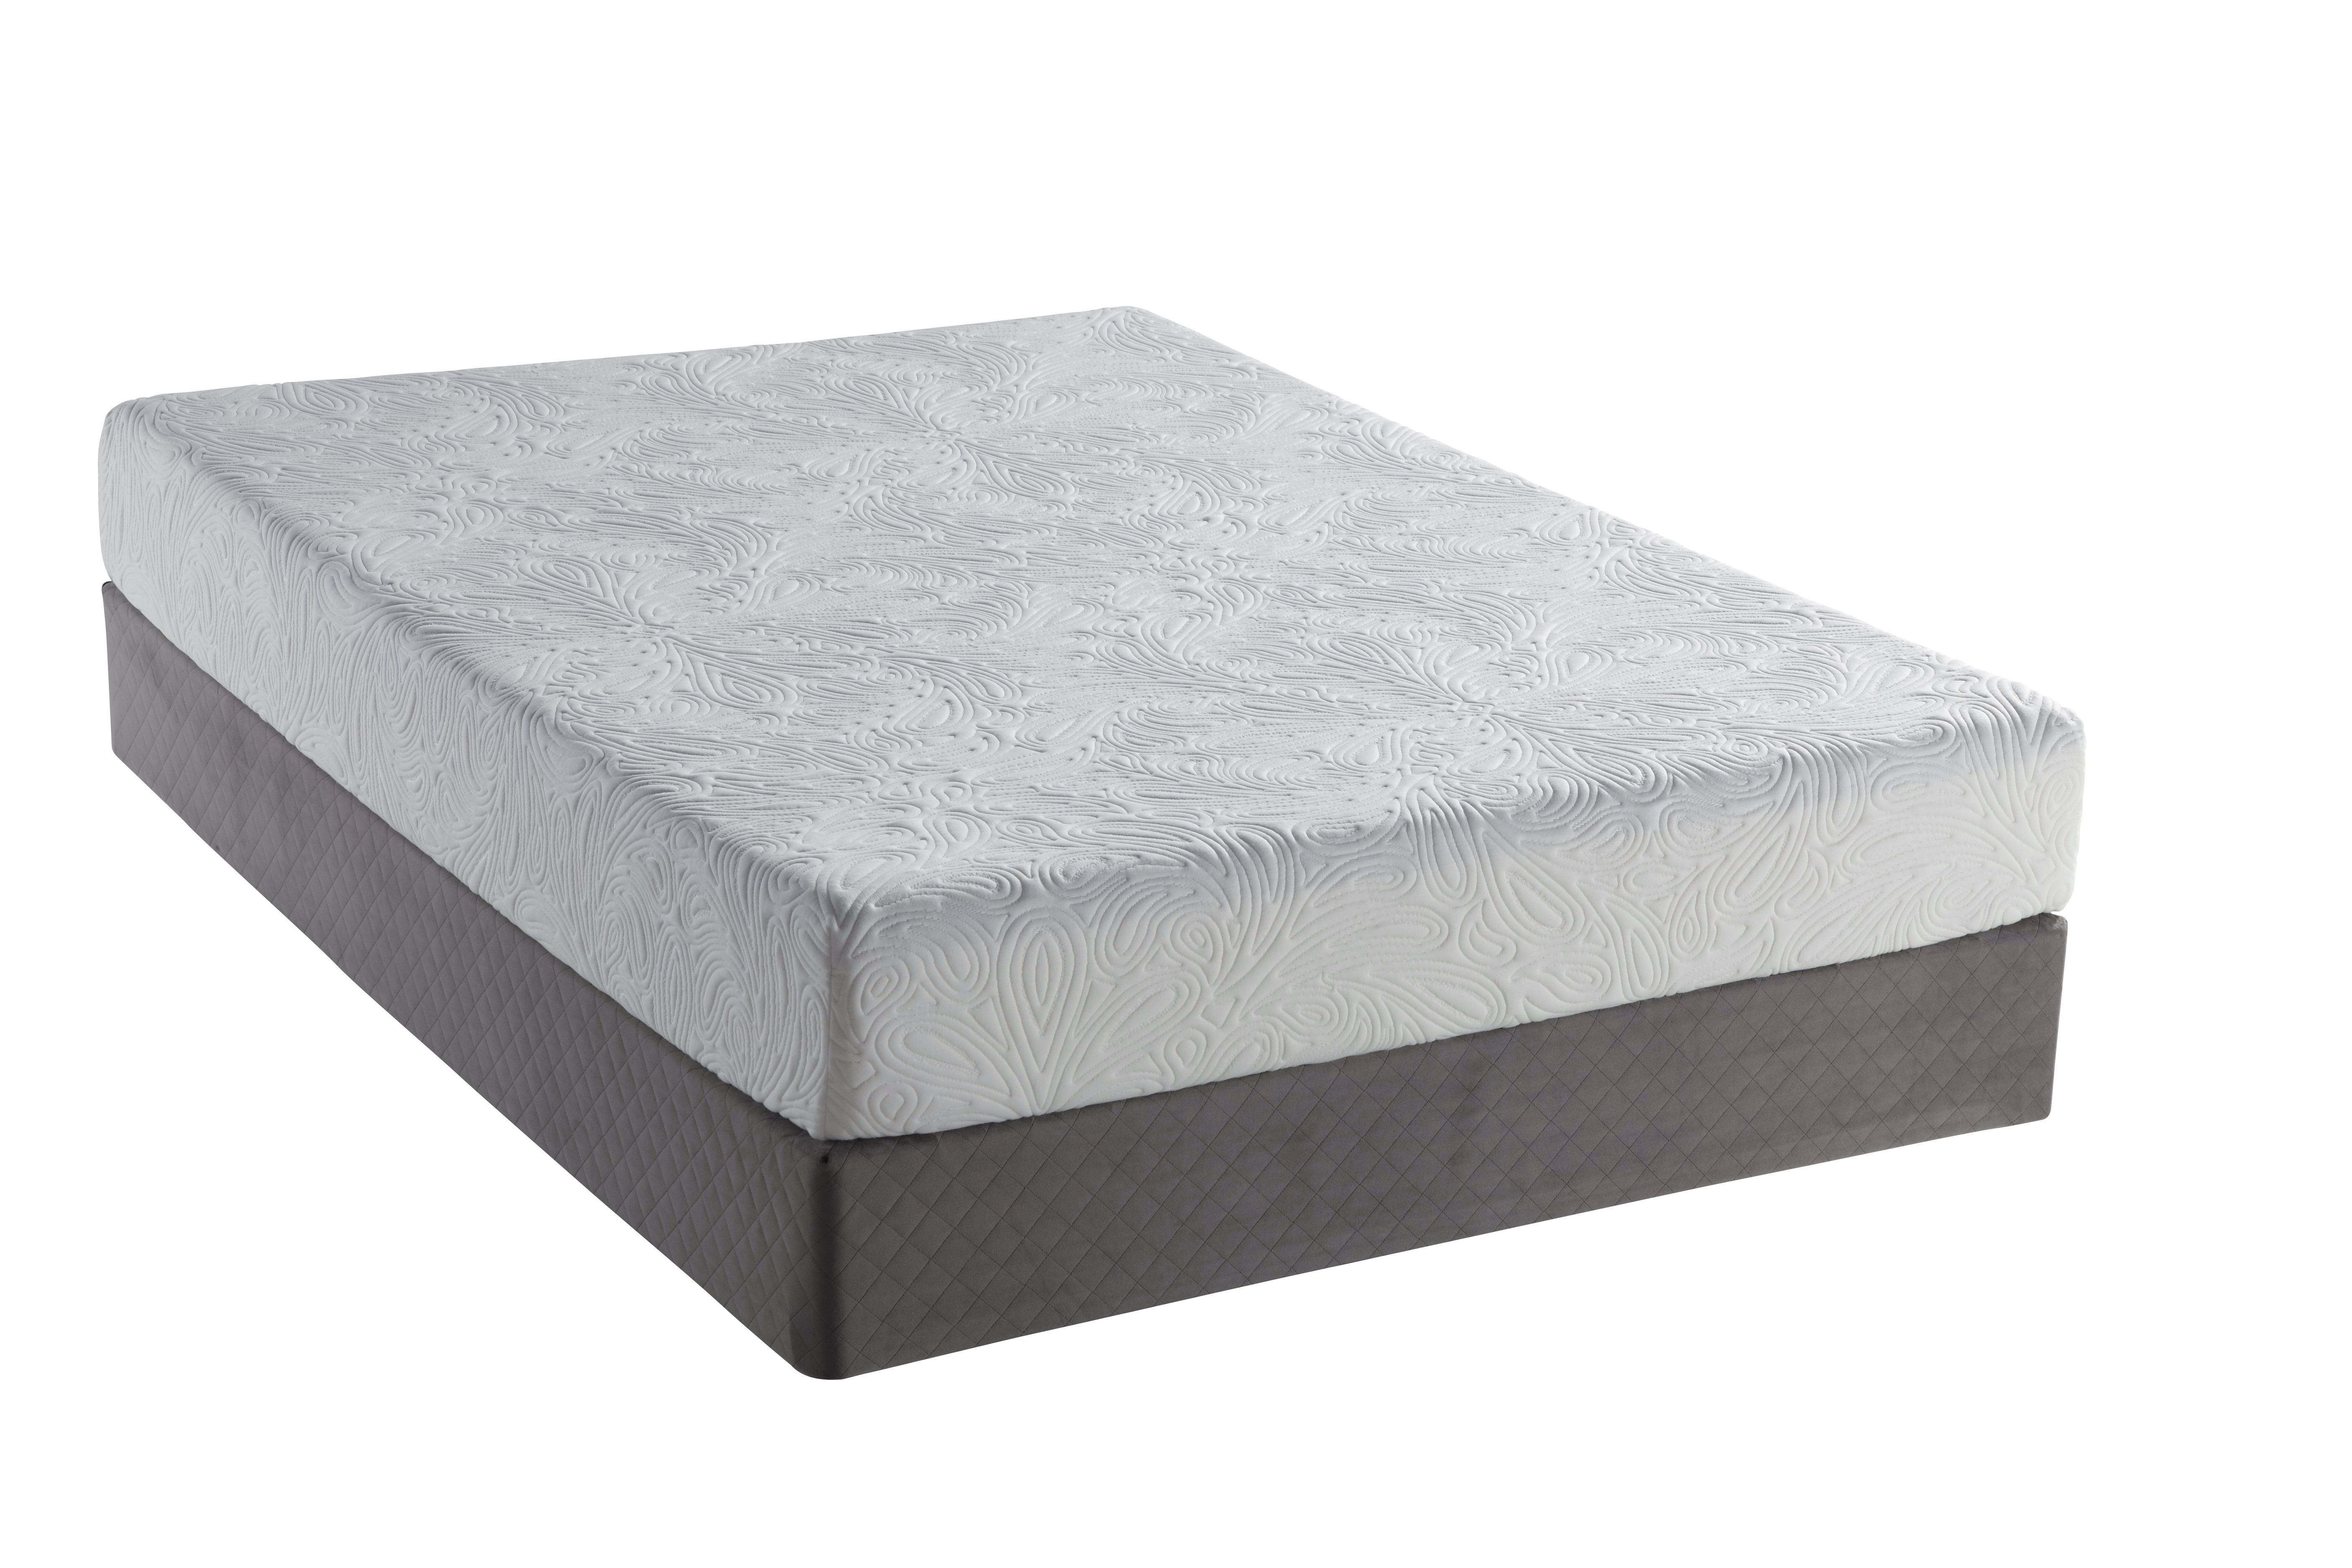 max weight for memory foam mattress